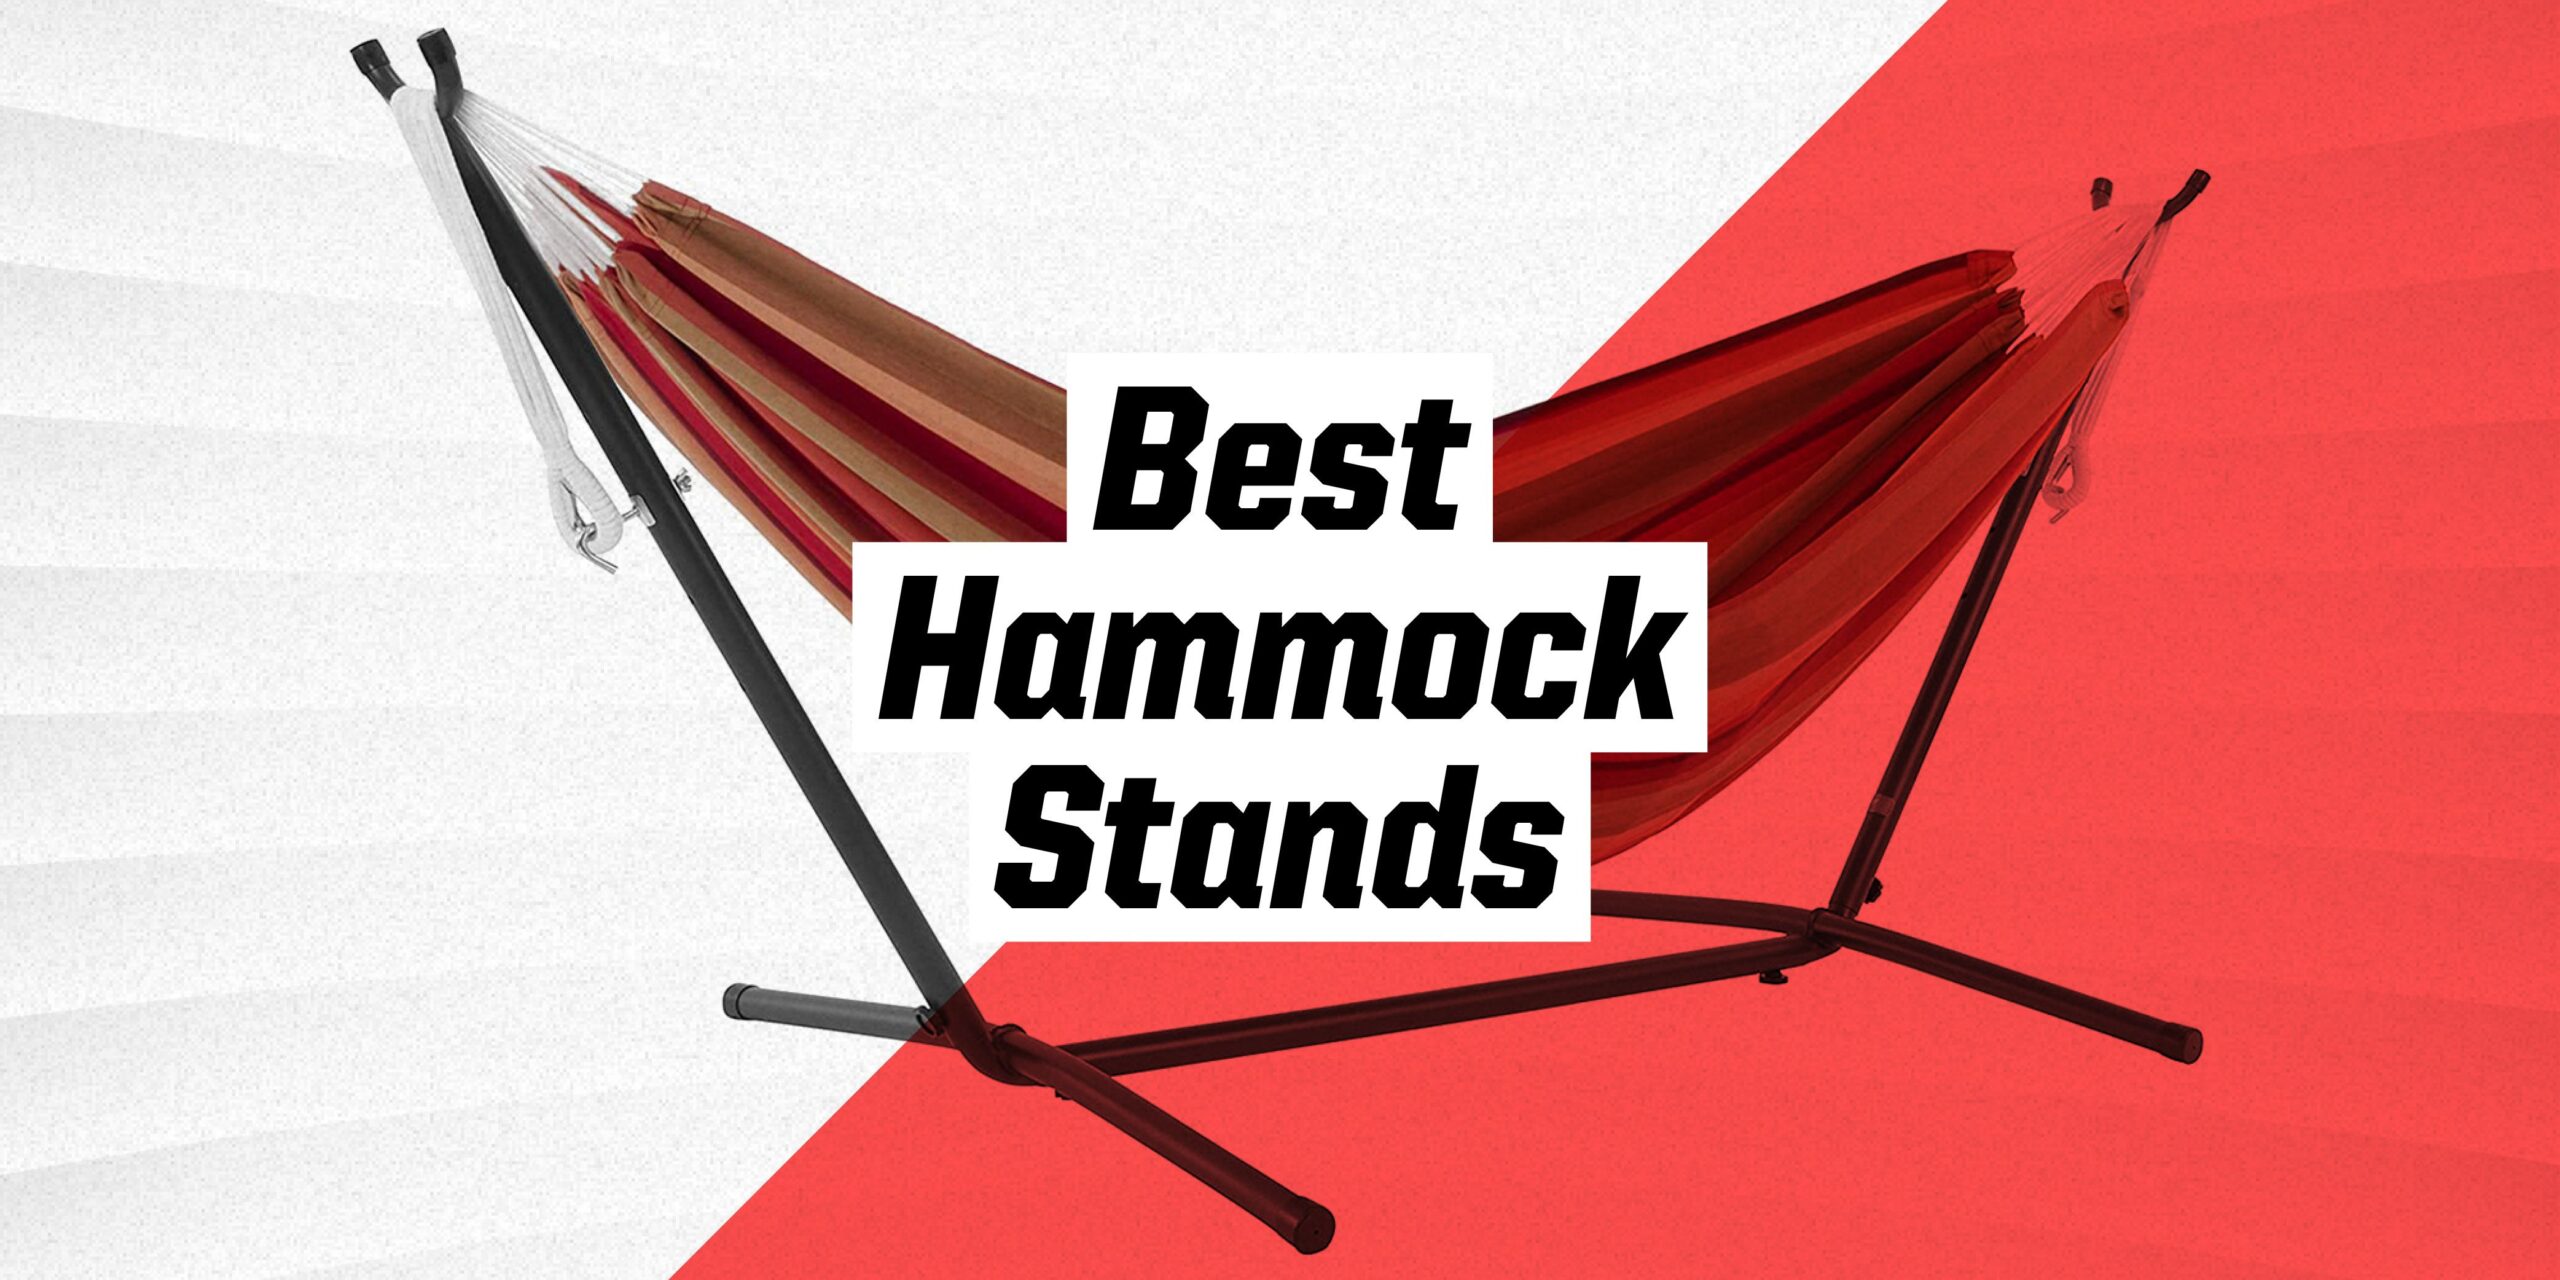 Best Hammock Stand 2022